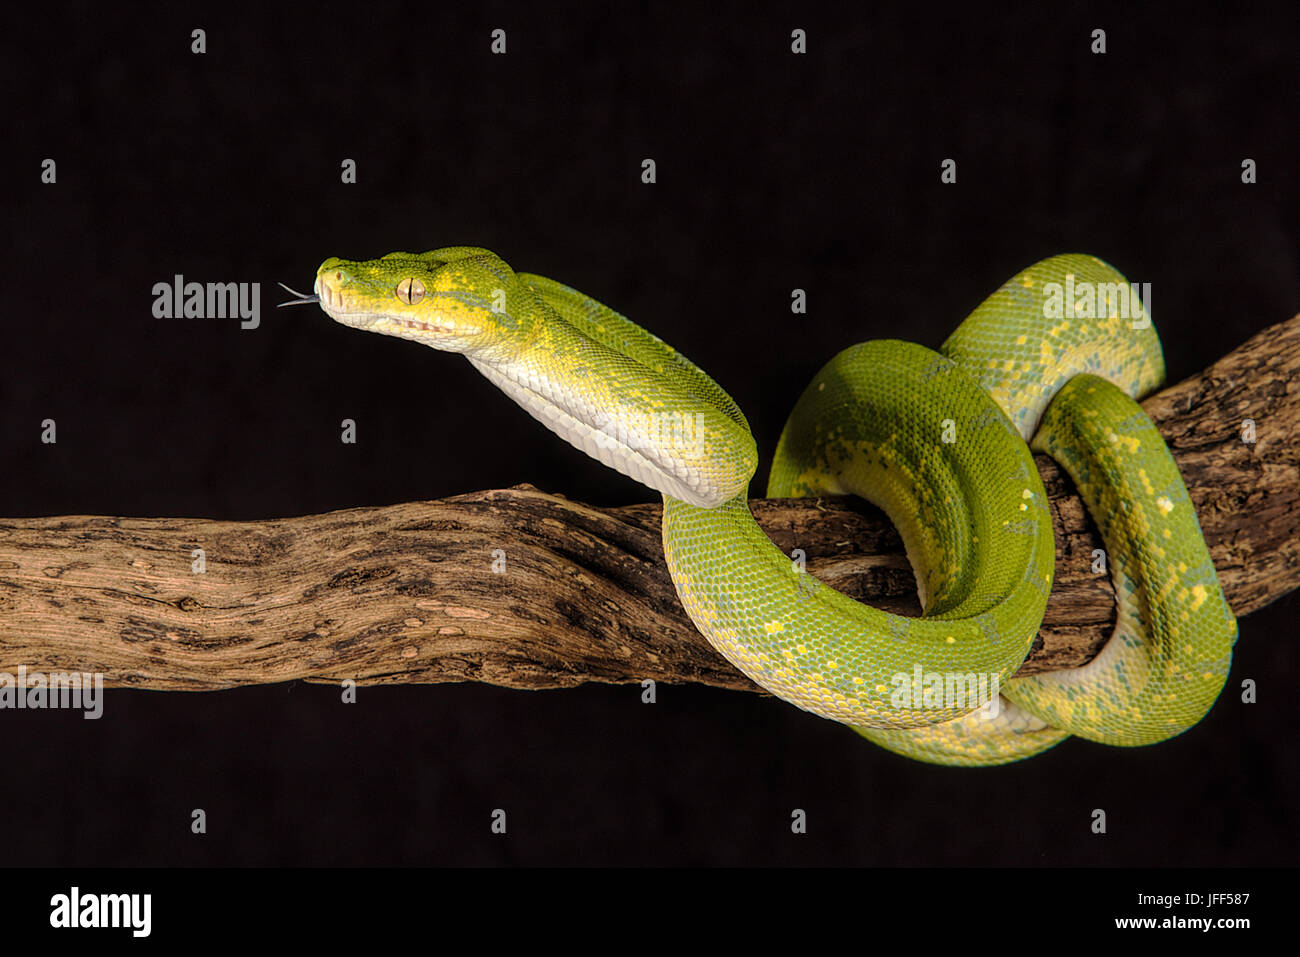 Un gros plan d'un arbre vert python enroulé autour d'une branche avec sa langue qui dépasse Banque D'Images